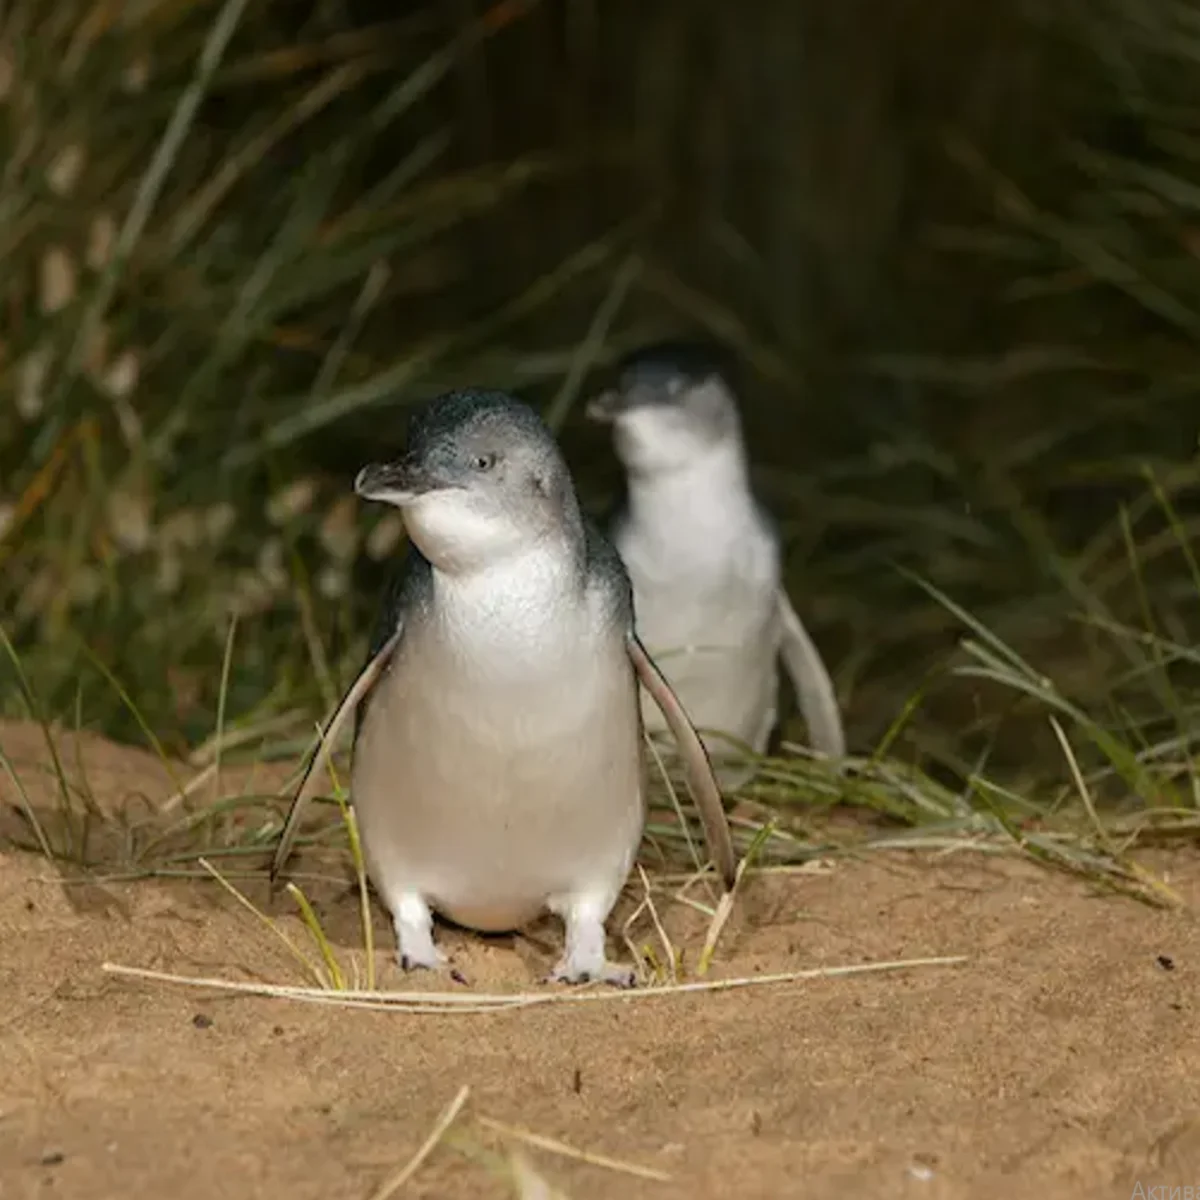 Phillip Island Penguin